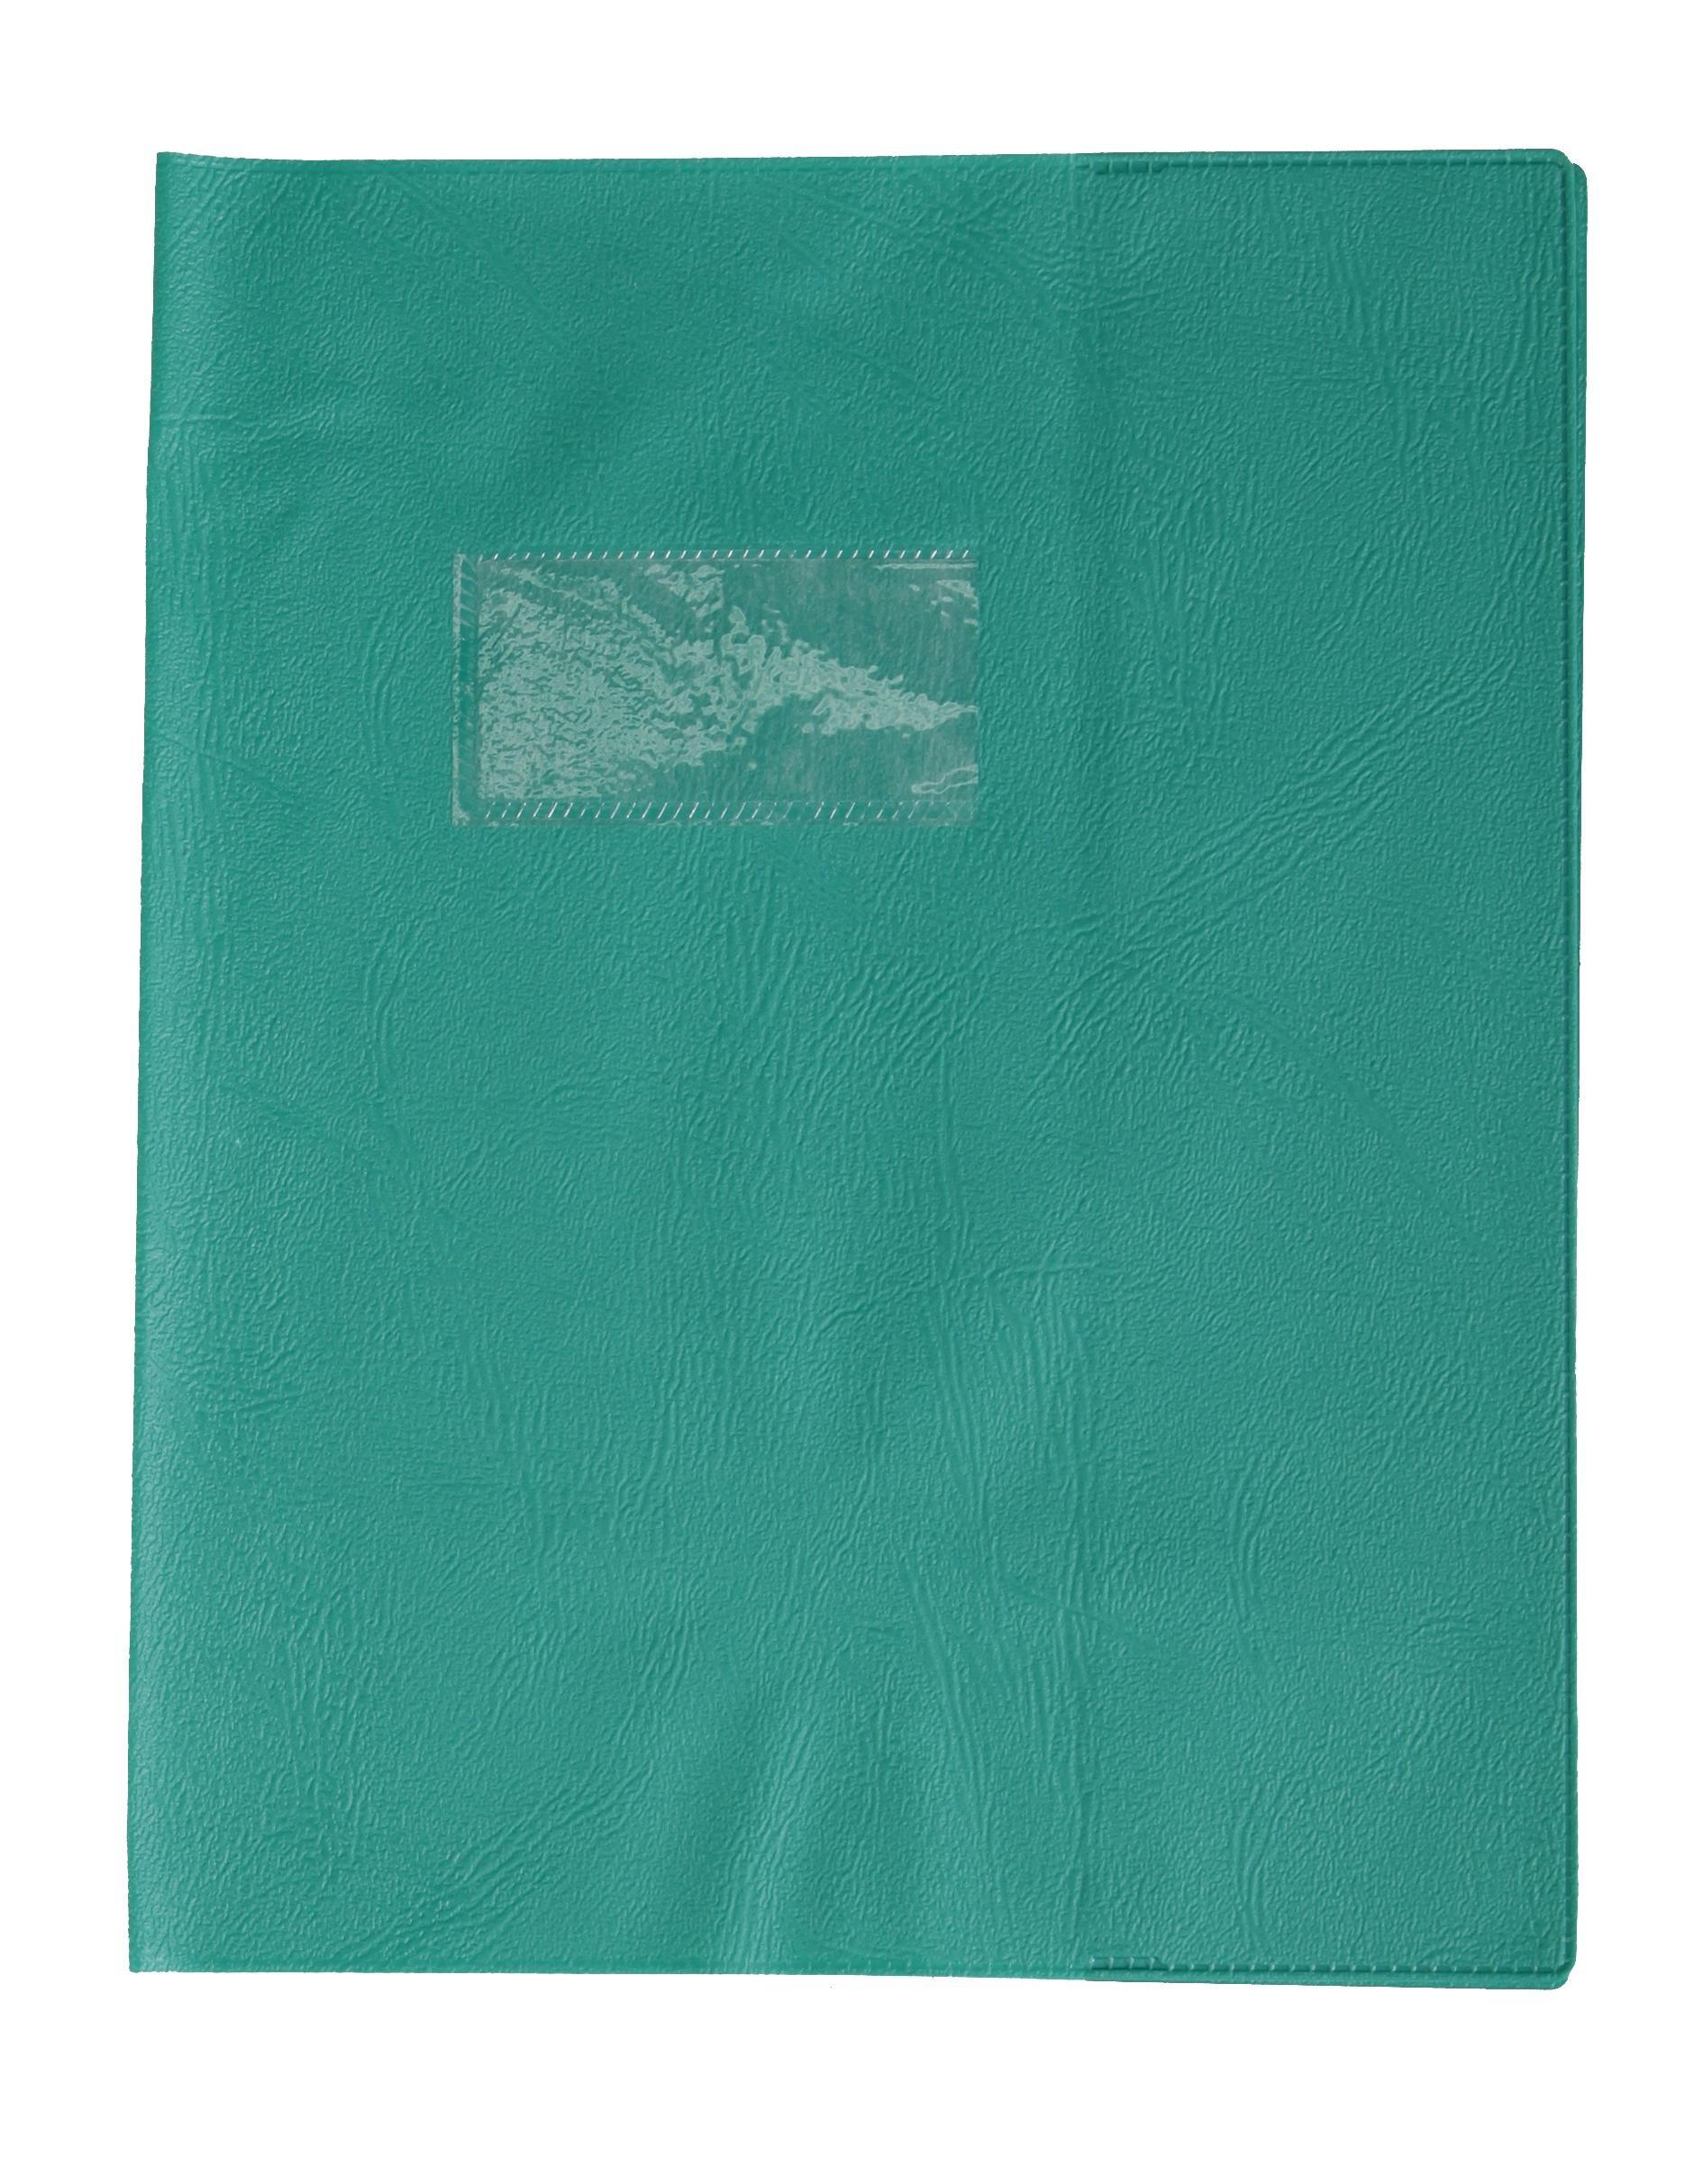 Protège-cahier nylon uni 20/100e - 17x22 - Vert